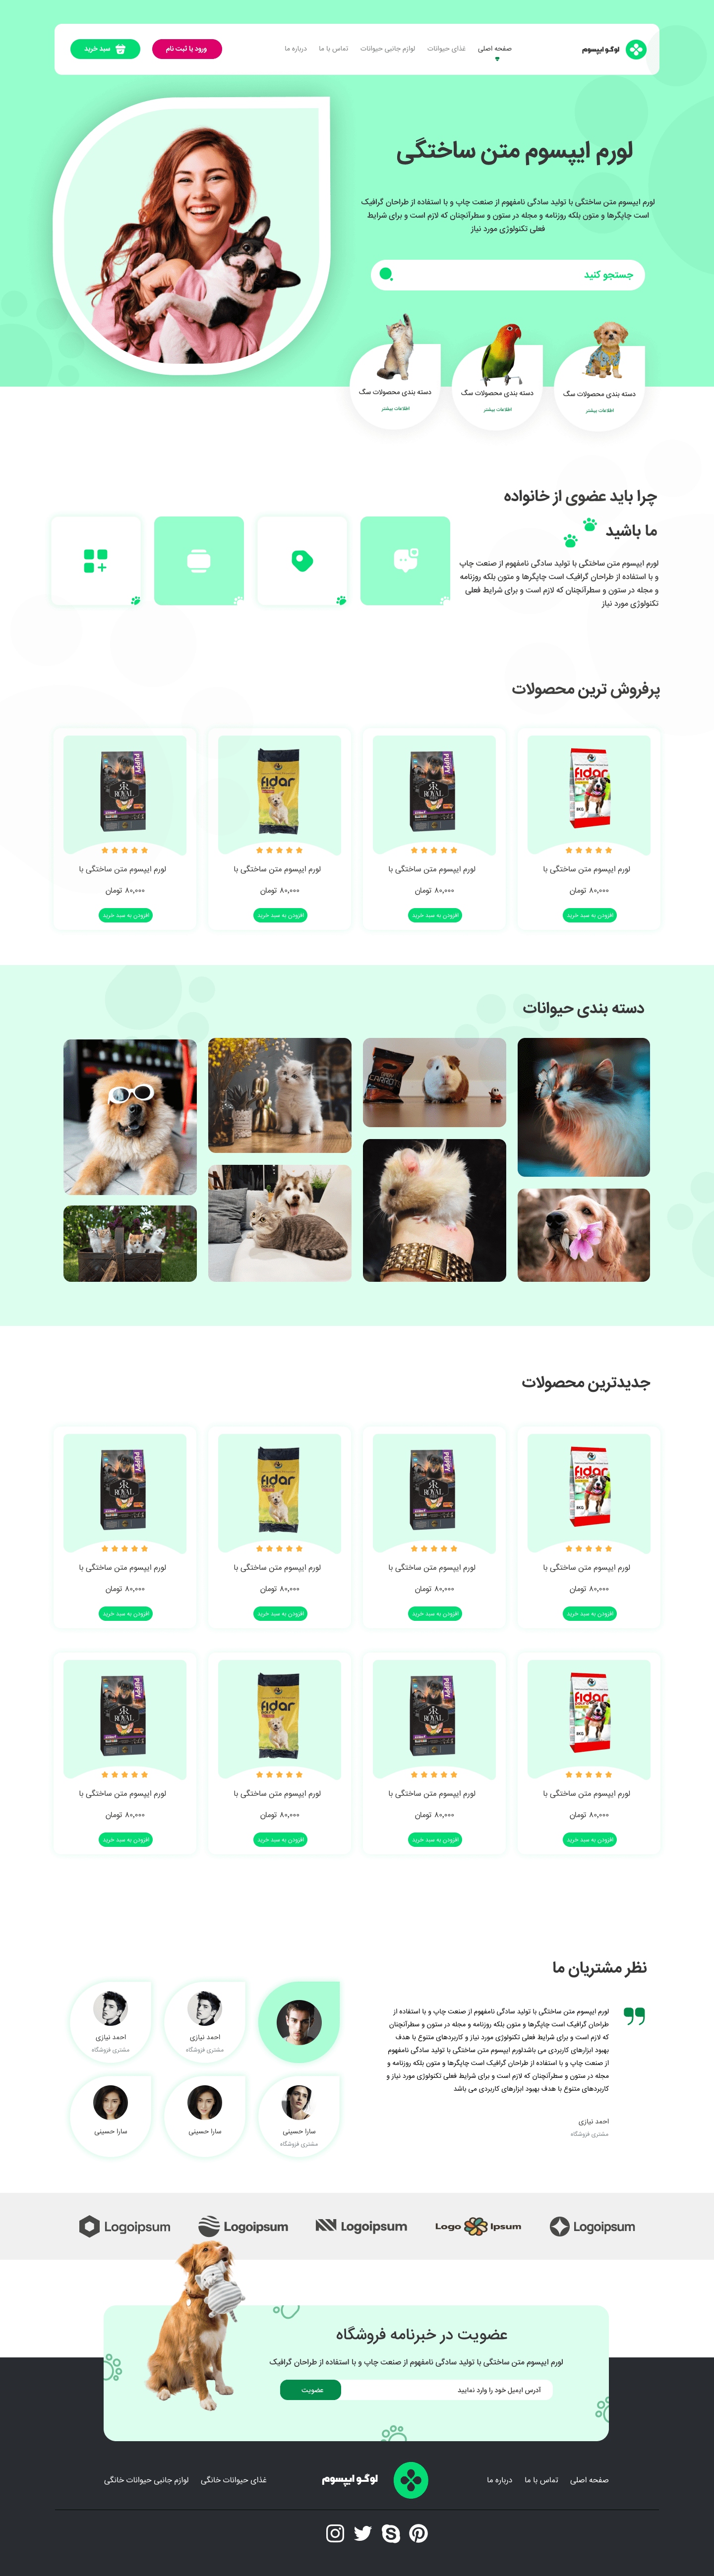 نمونه-طراحی-سایت-برای-کاربری-فروشگاه-اینترنتی-وسایل-حیوانات-خانگی